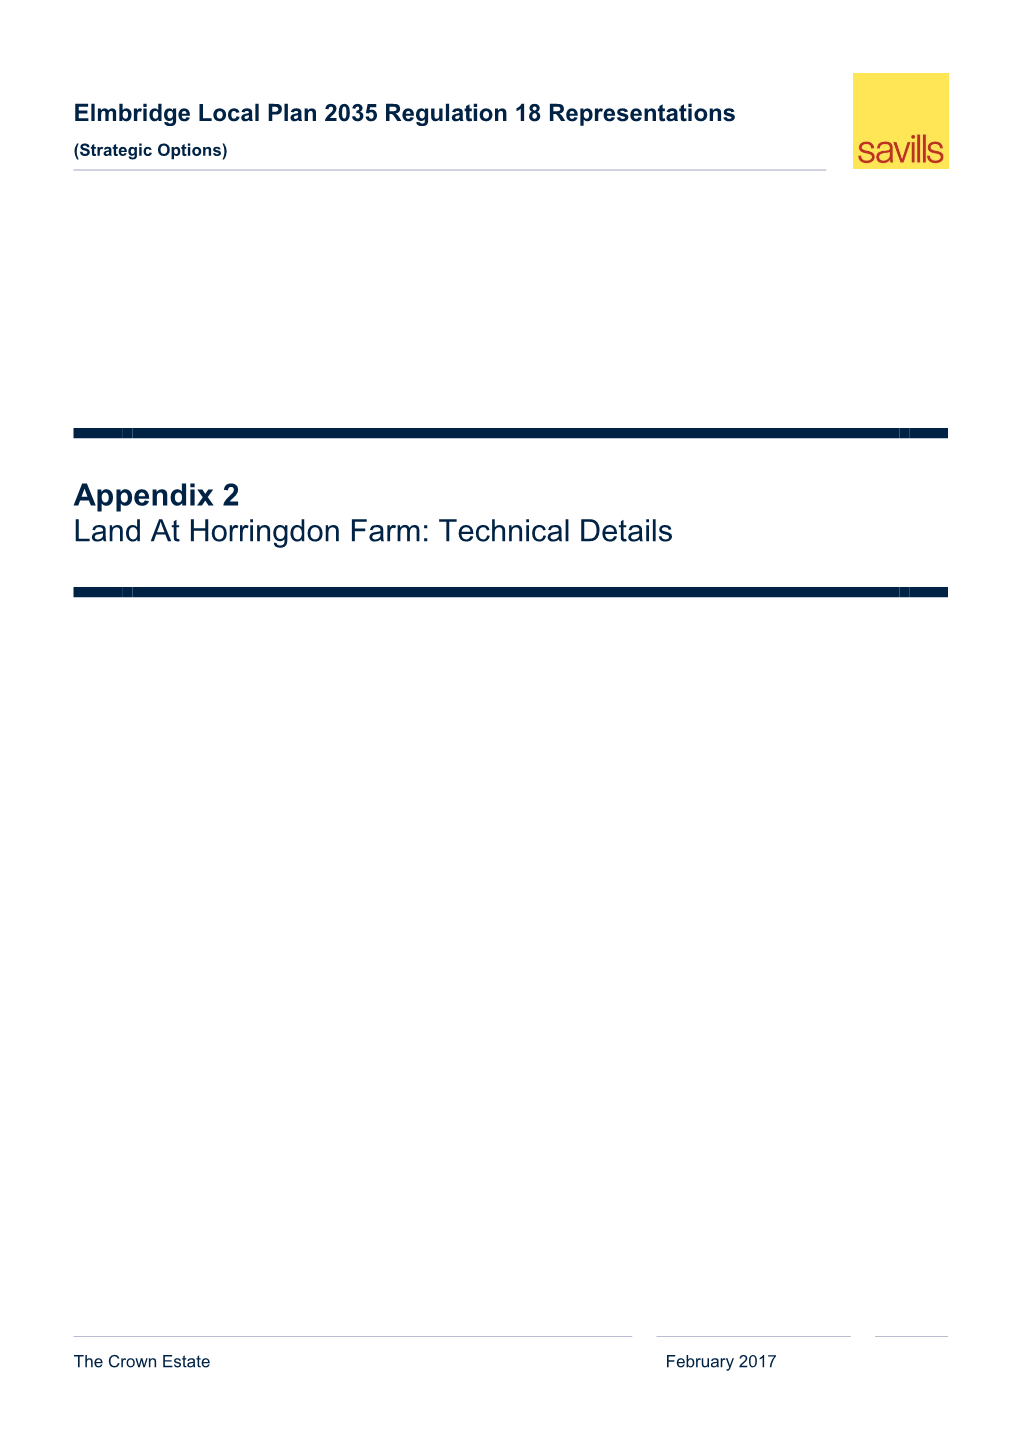 Appendix 2 Land at Horringdon Farm: Technical Details